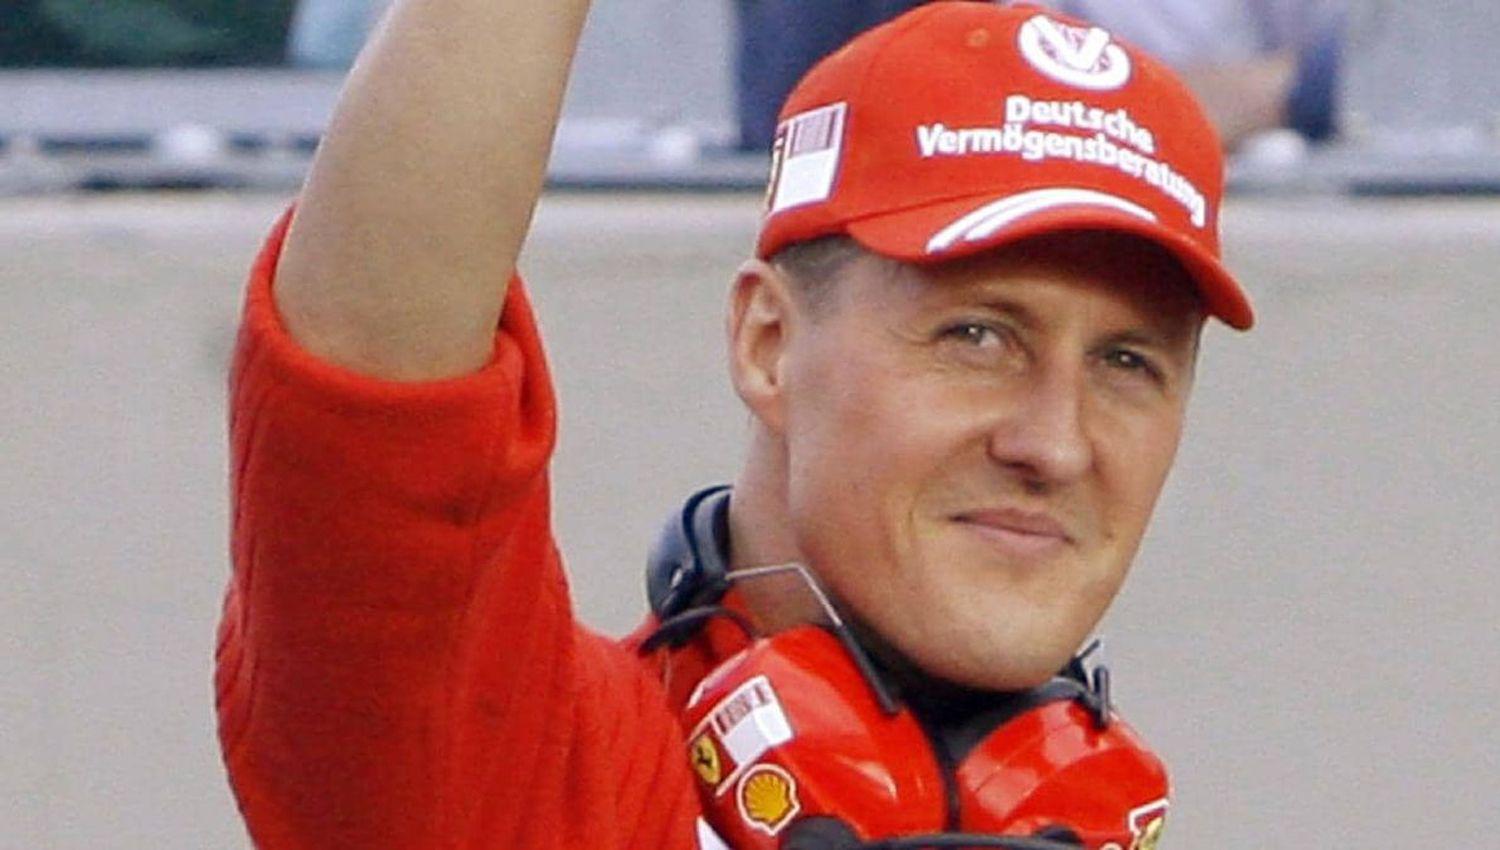 Le tomaron una foto a Michael Schumacher postrado en la cama y piden maacutes de US1 milloacuten